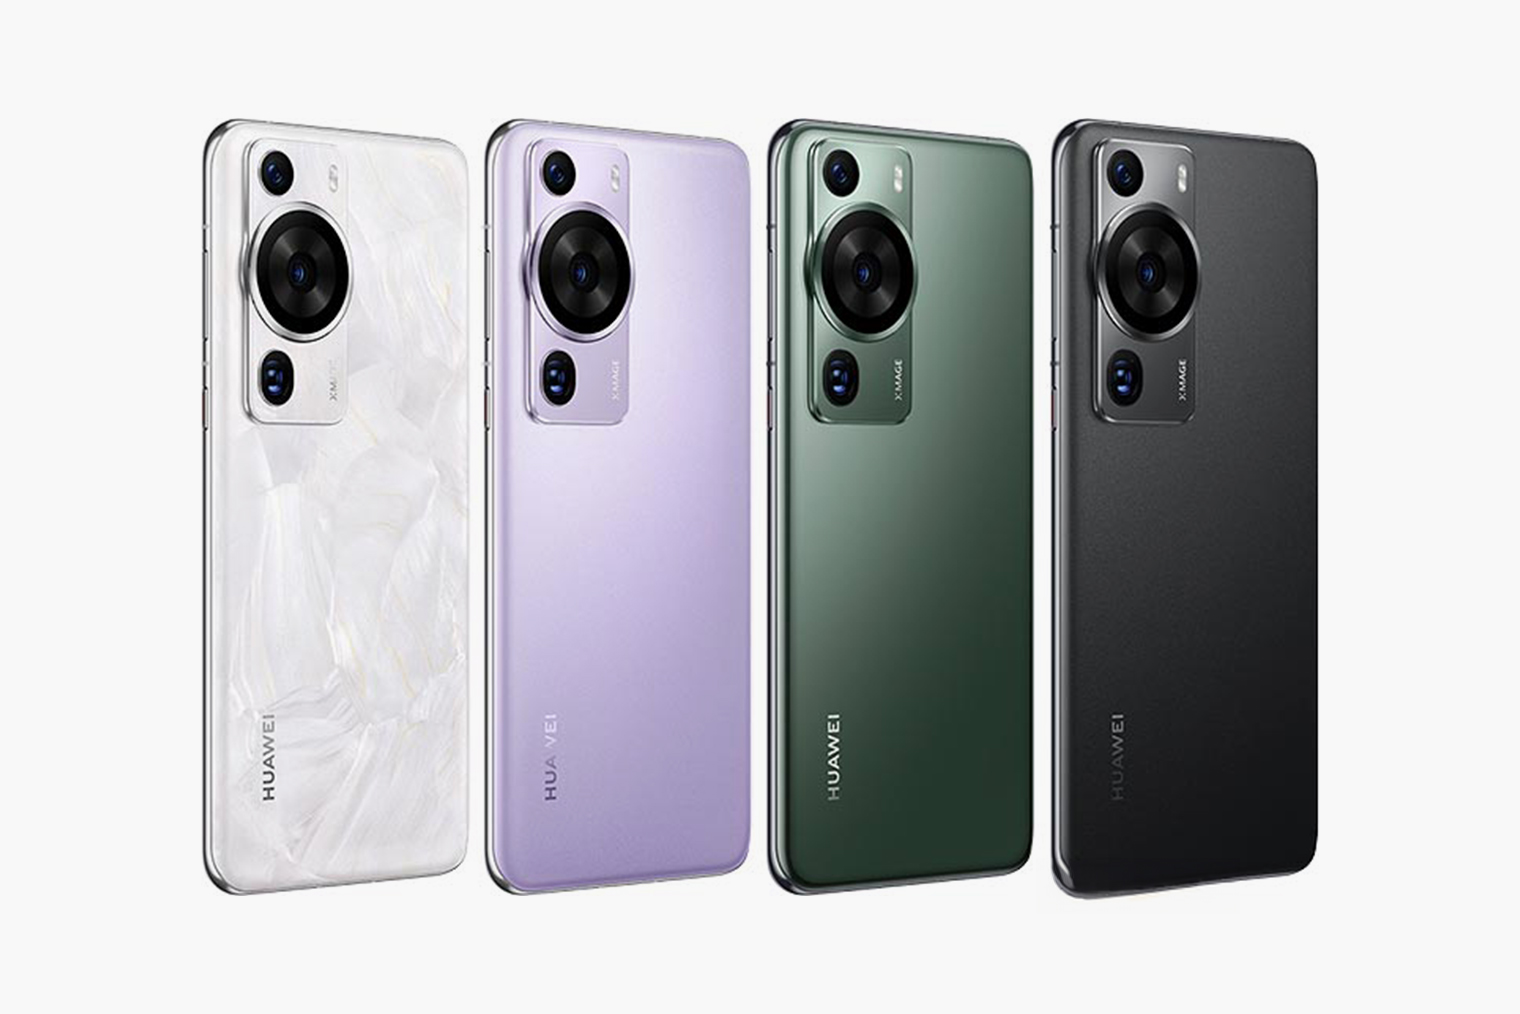 Huawei P60 Pro в разных цветах. Общие элементы в дизайне есть, но блок камер у новой модели крупнее и немного другой формы